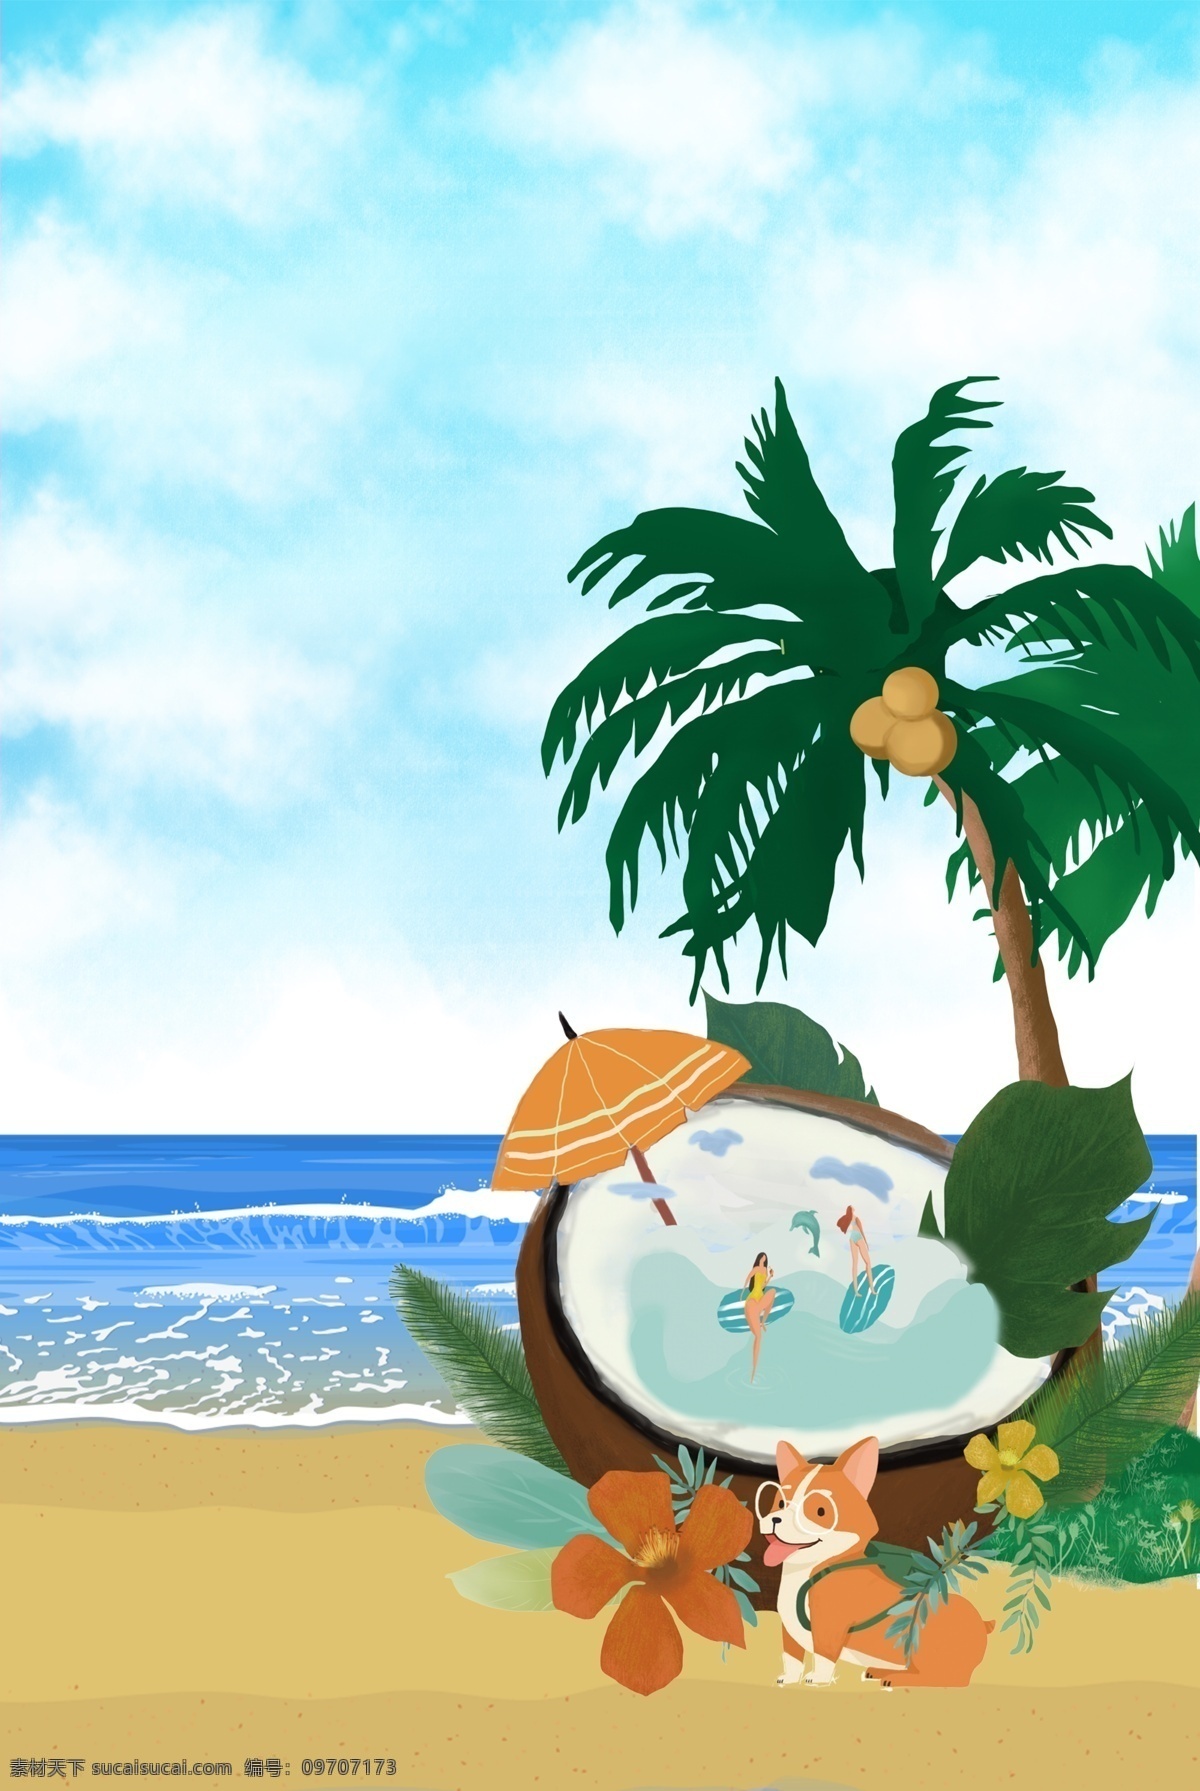 夏日 阳光 沙滩 椰子 浴 夏天 夏季 沐浴 饮料 蓝天 白云